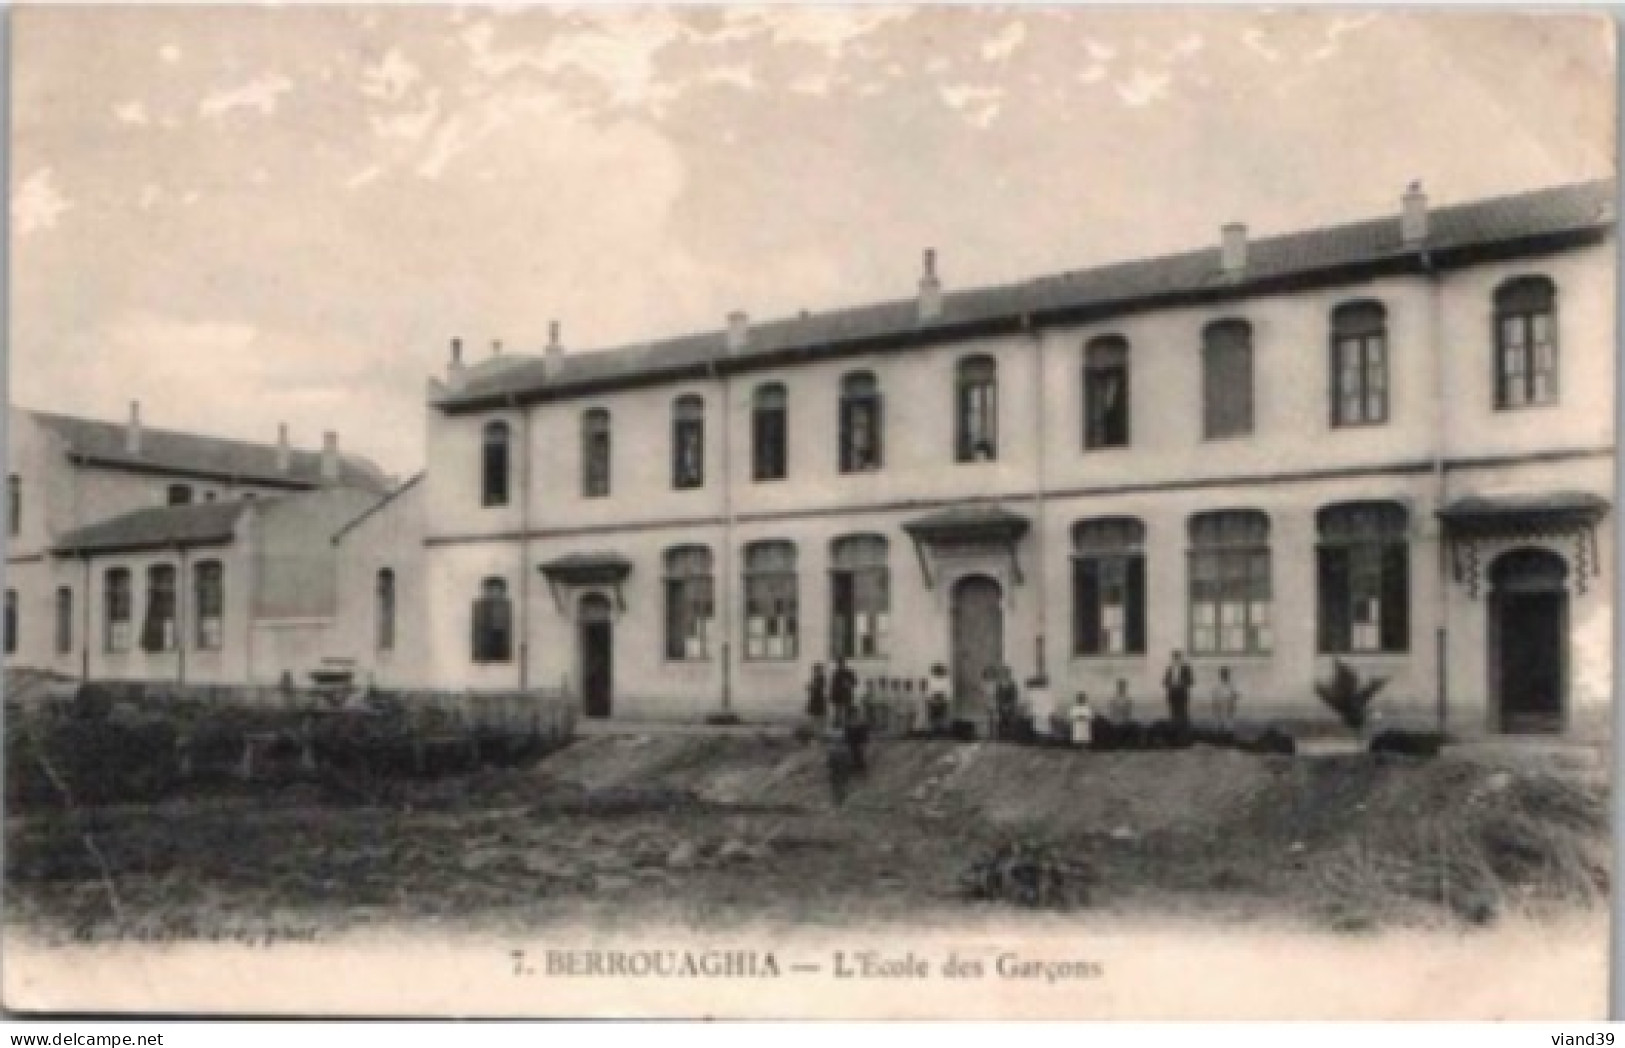 BERROUAGHIA.  -  Ecole Des Garçons. CPA. 1915 - Médéa